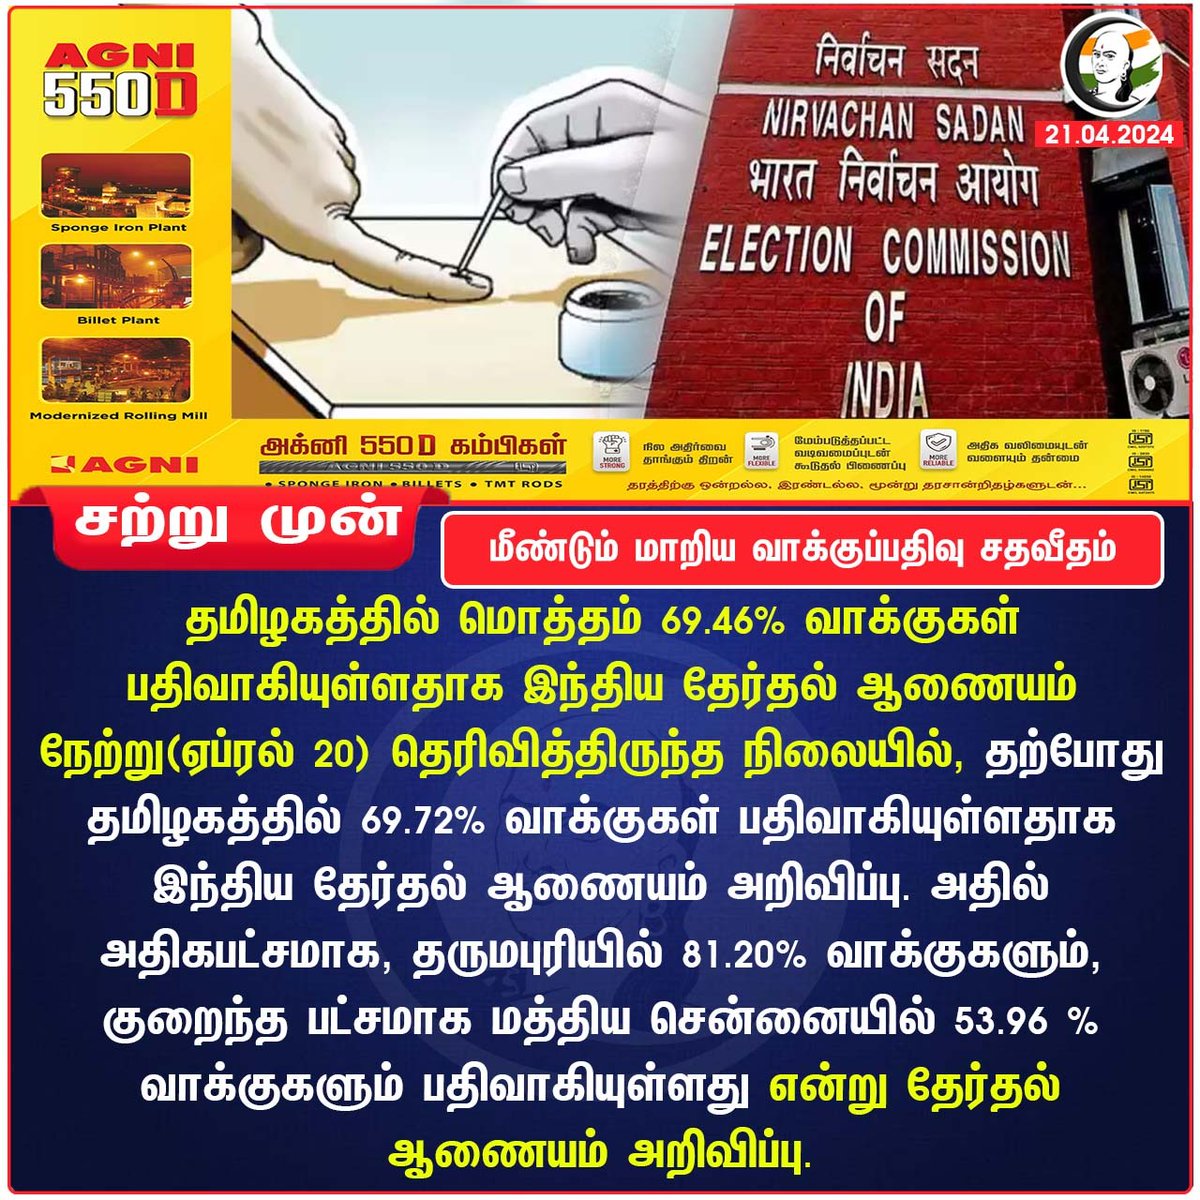 மீண்டும் மாறிய வாக்குப்பதிவு சதவீதம்
#ElectionCommission #tamilnaduelection